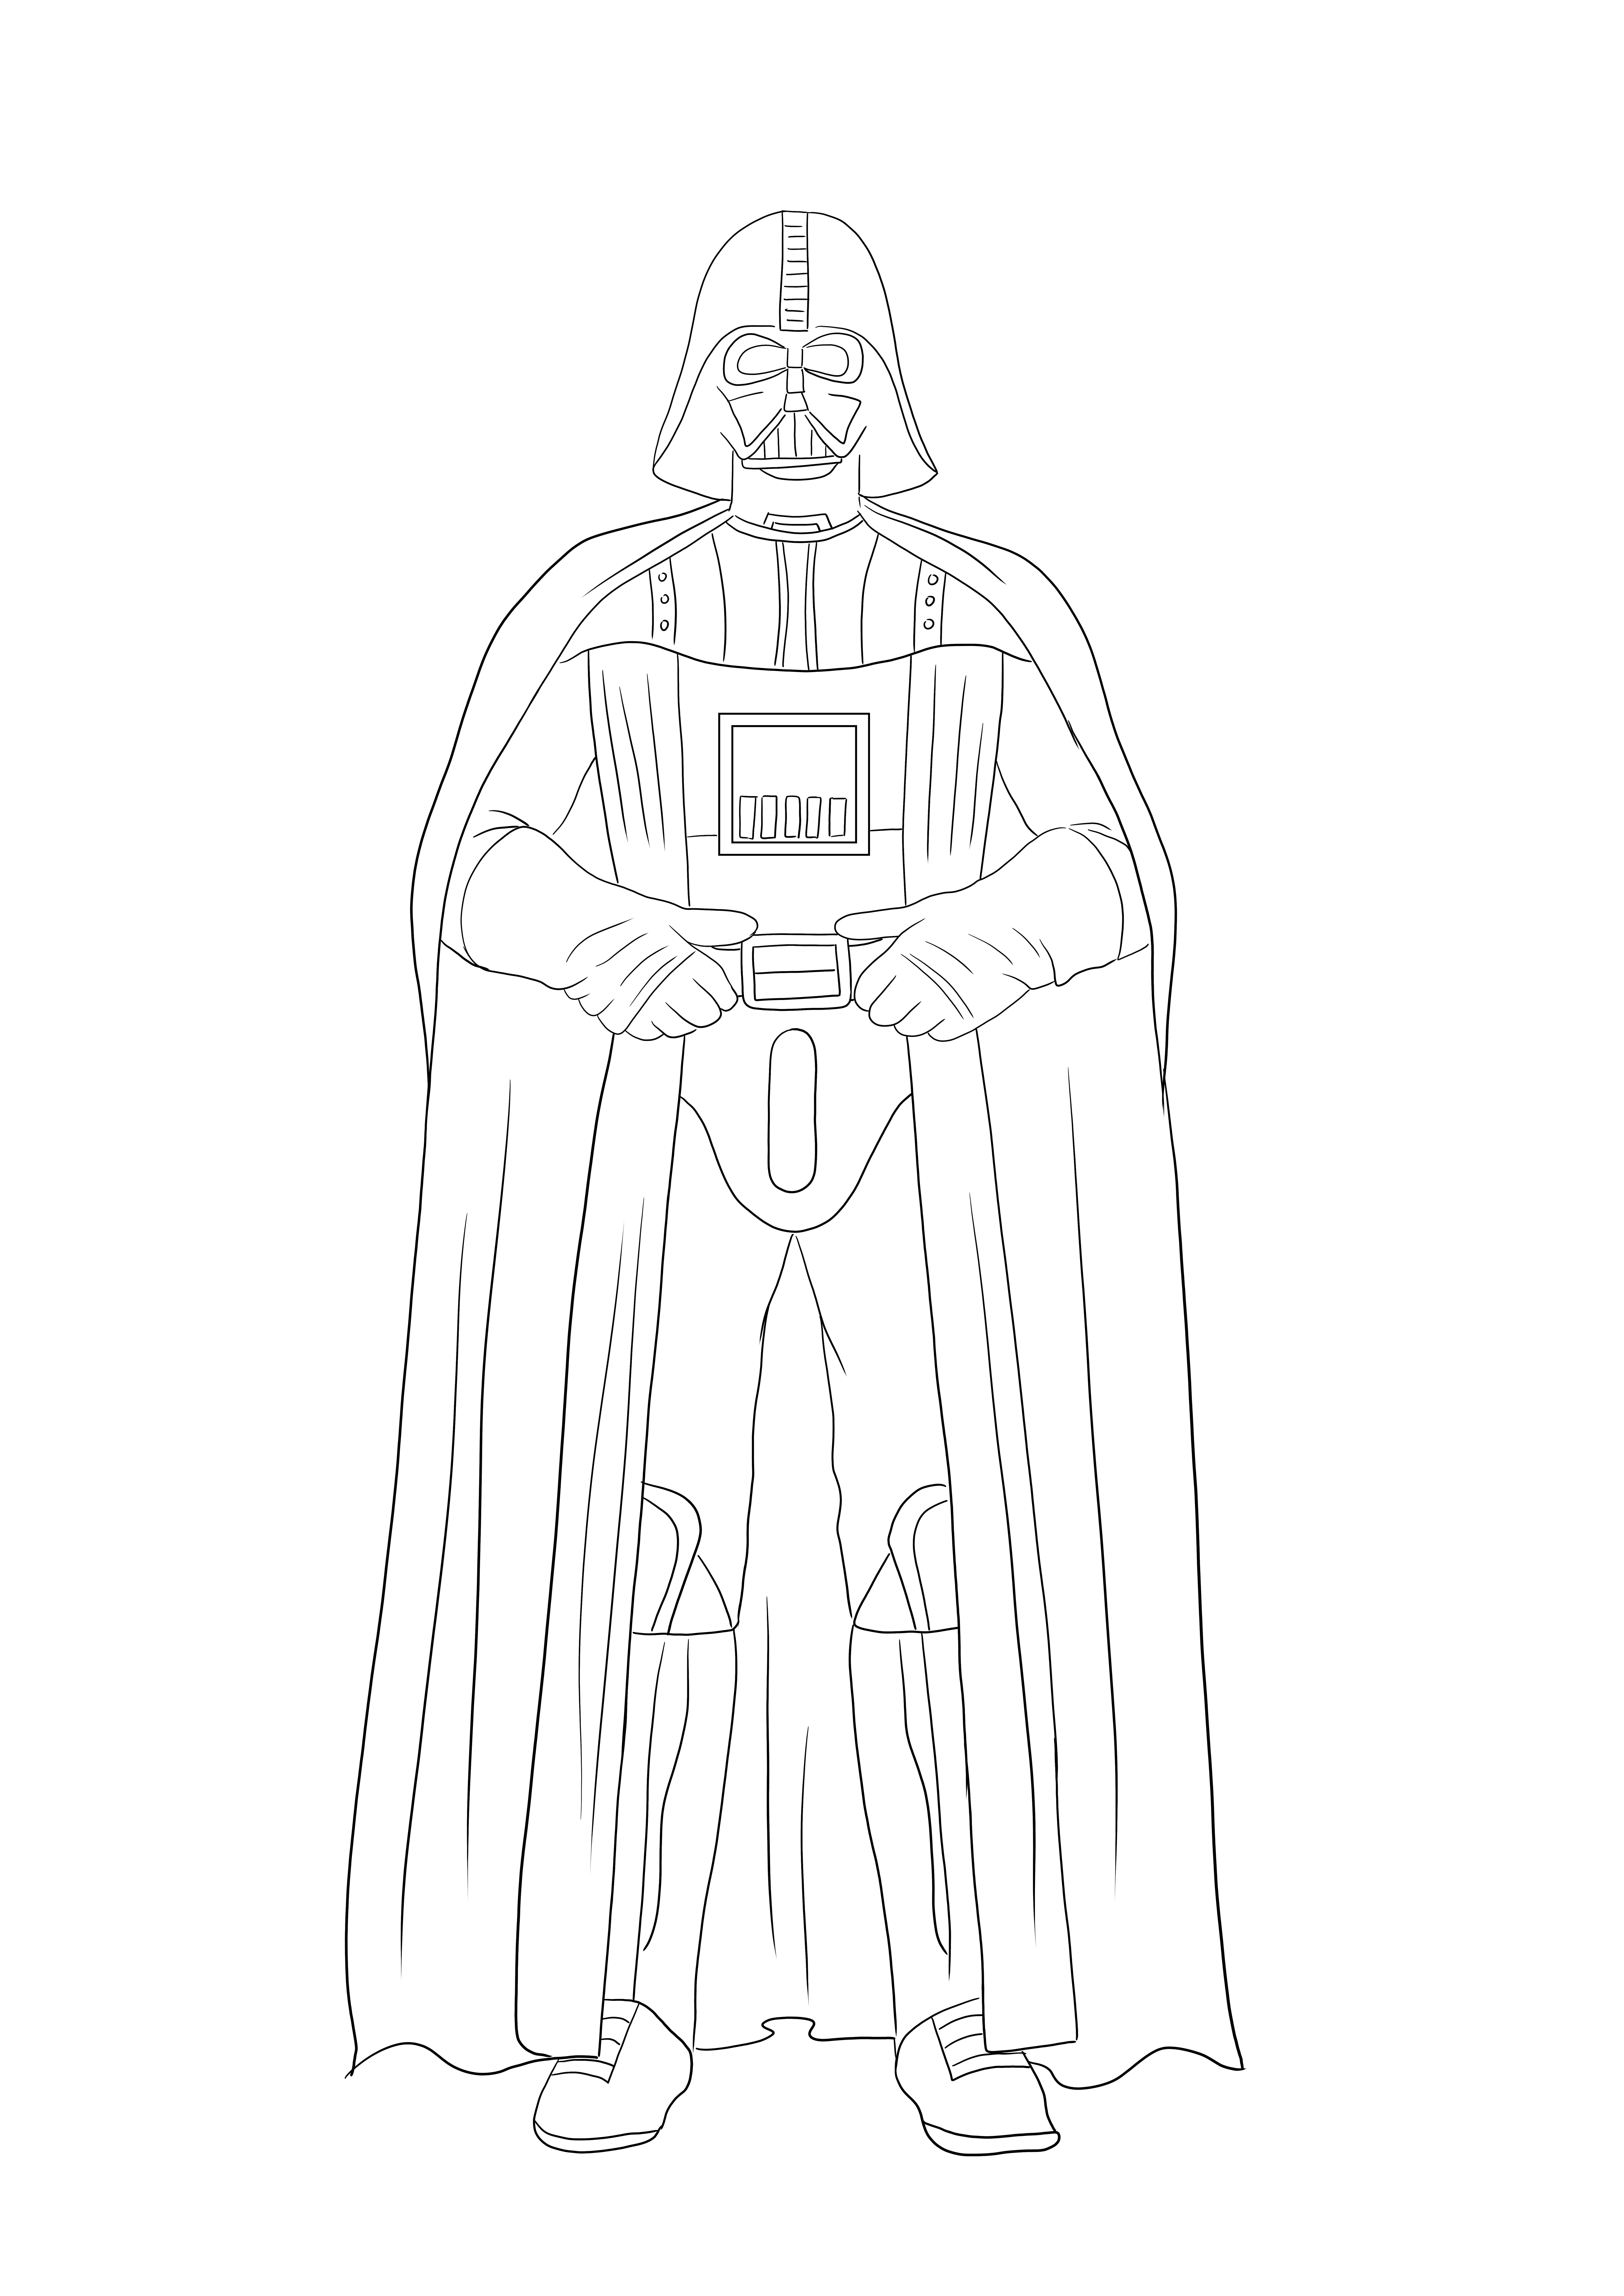 Darth Vader színezőképe készen áll arra, hogy minden rajongója kinyomtassa és kiszínezze